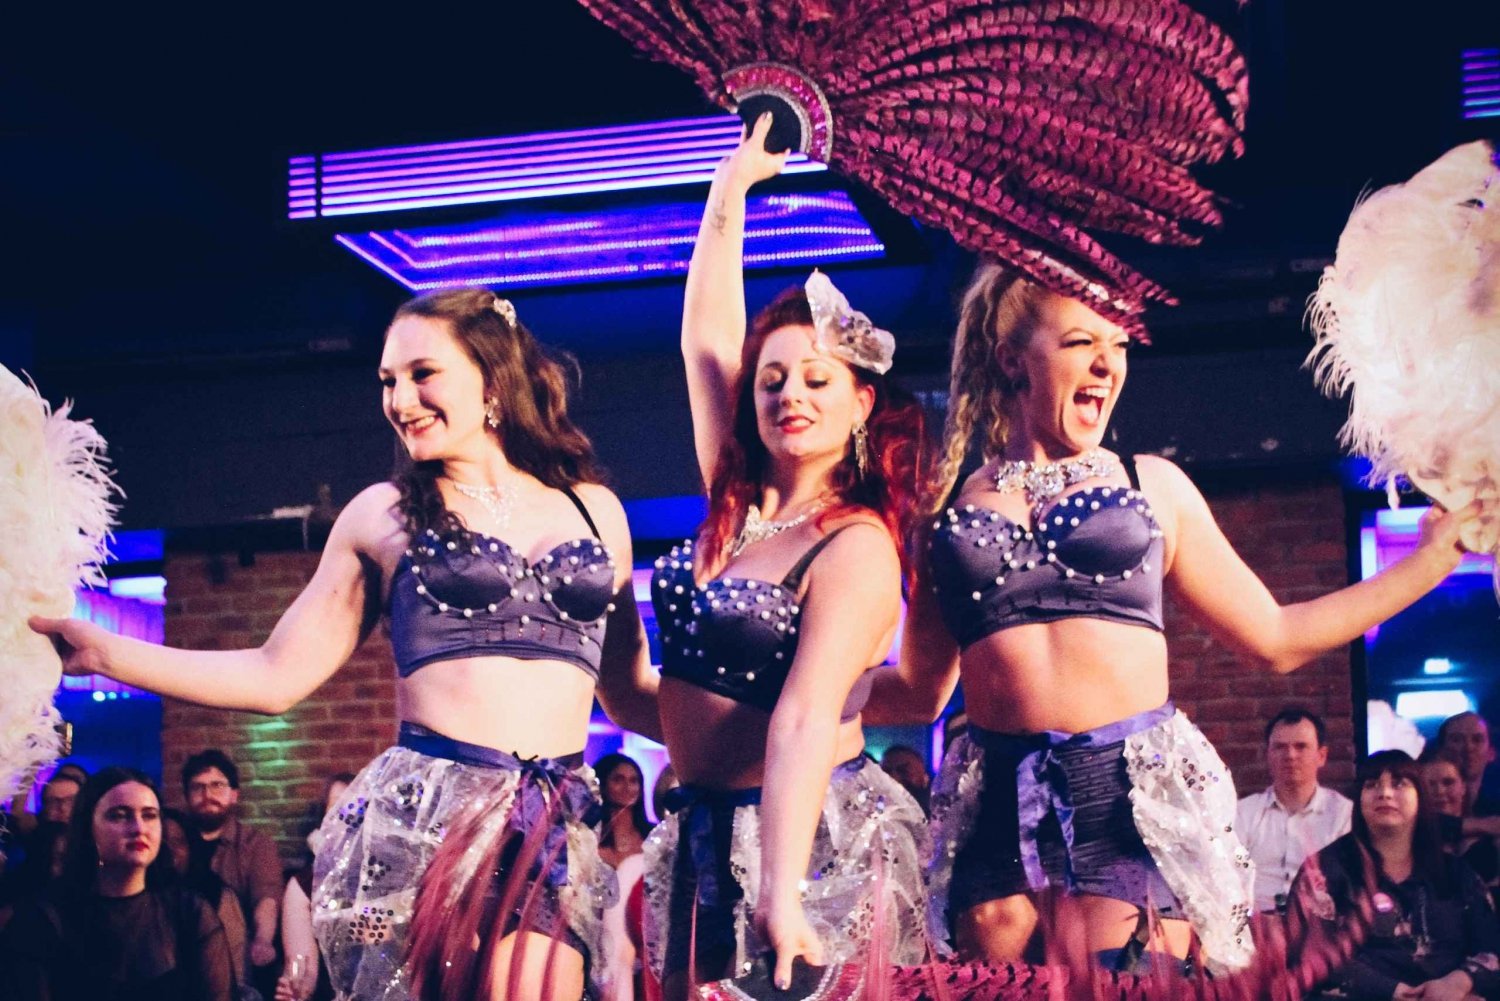 Londres : spectacle de cabaret burlesque à Covent Garden